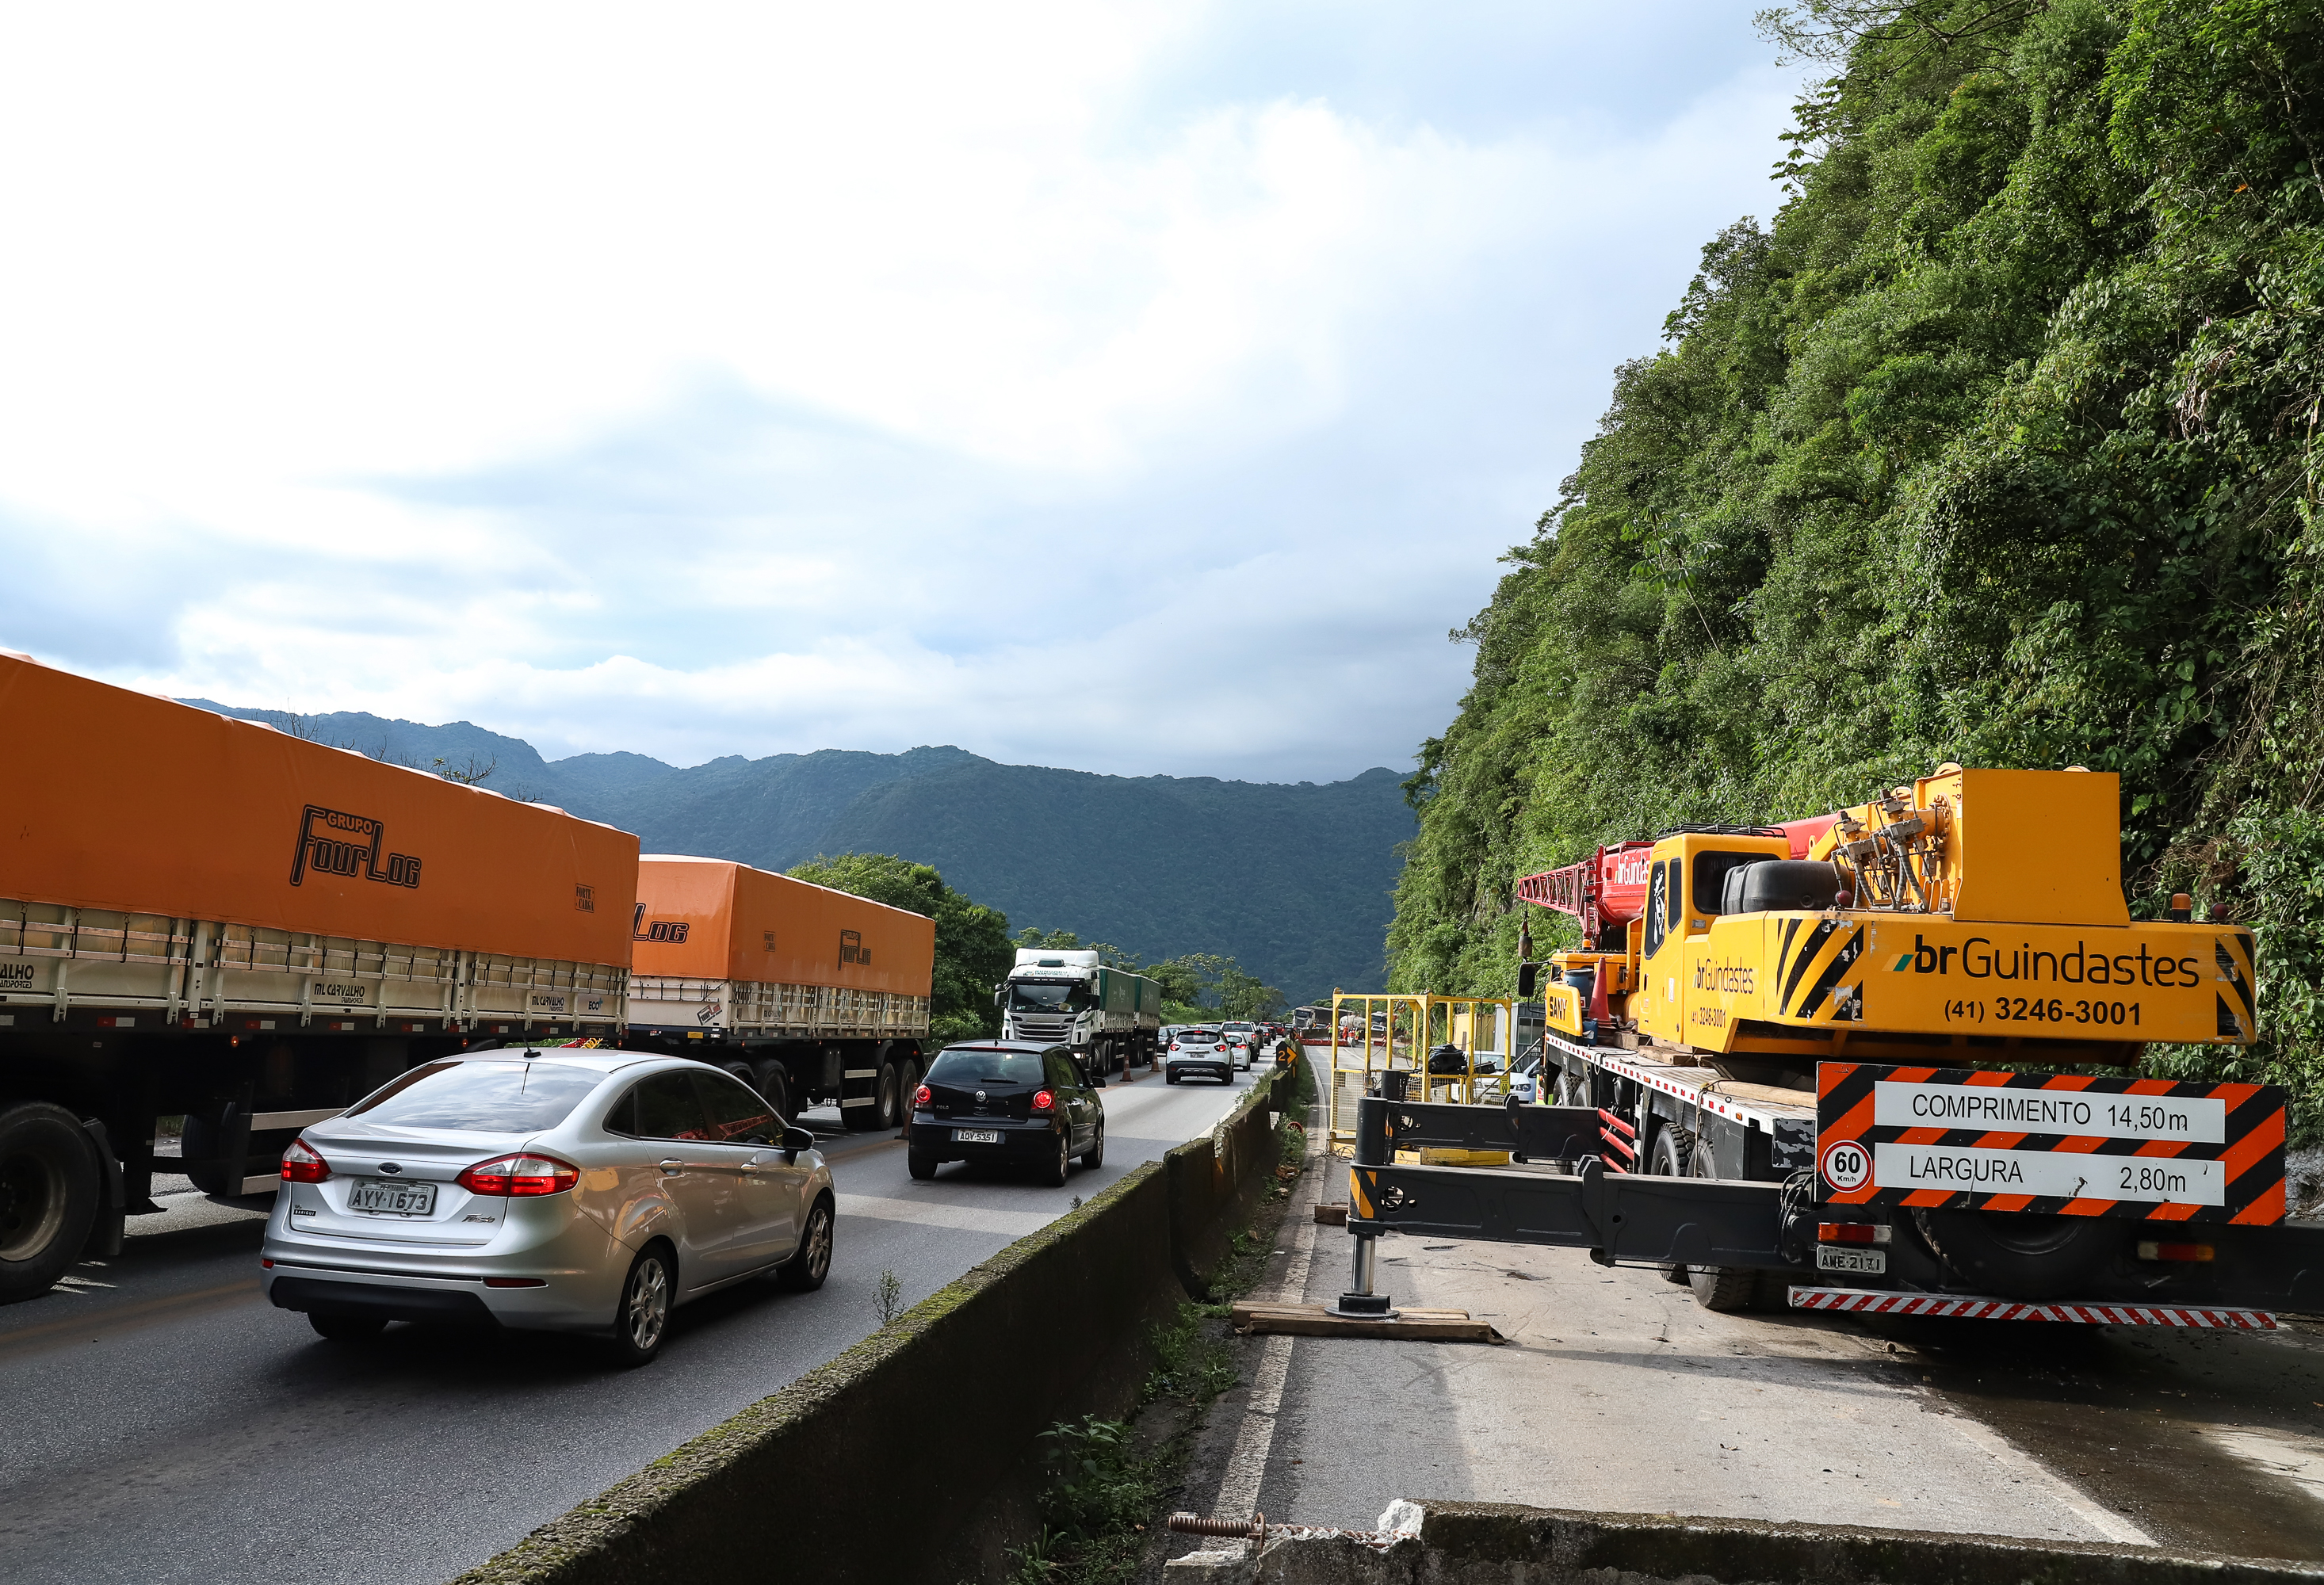 Últimos três dias: BR-277 terá restrição de tráfego pesado neste final de semana Foto: Rodrigo Félix Leal / SEIL